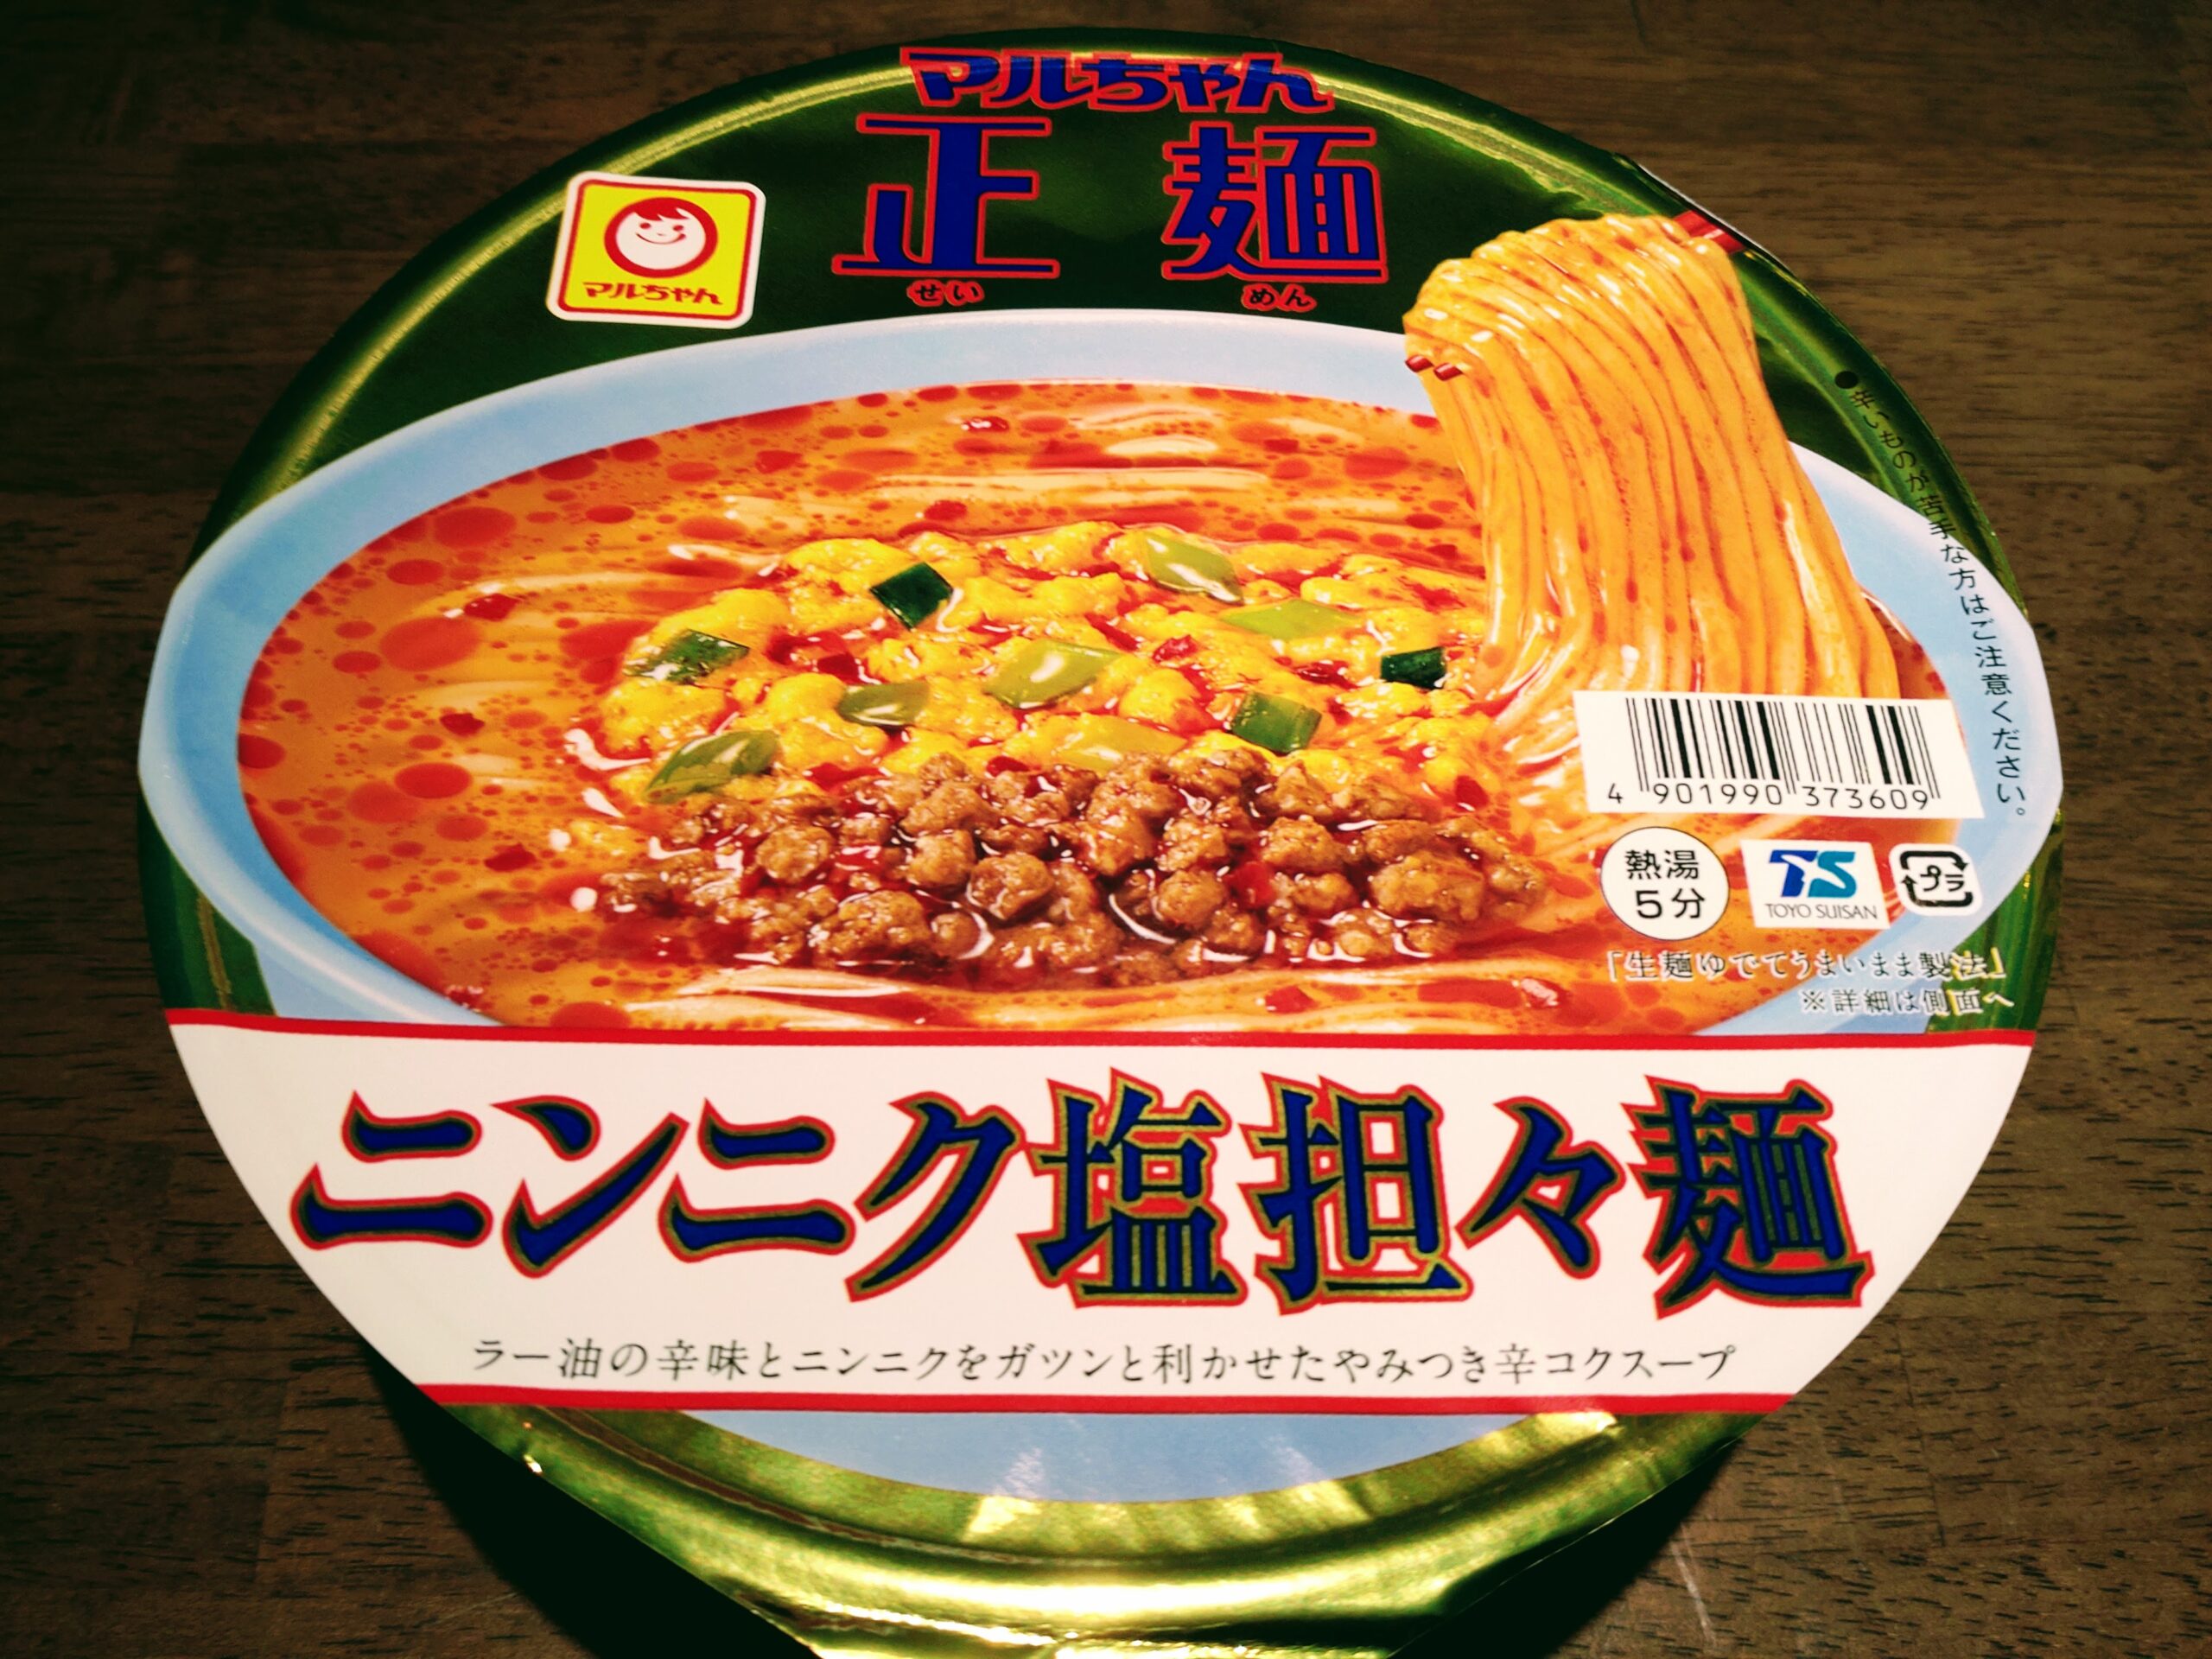 マルちゃん正麺 カップ ニンニク塩担々麺のパッケージ